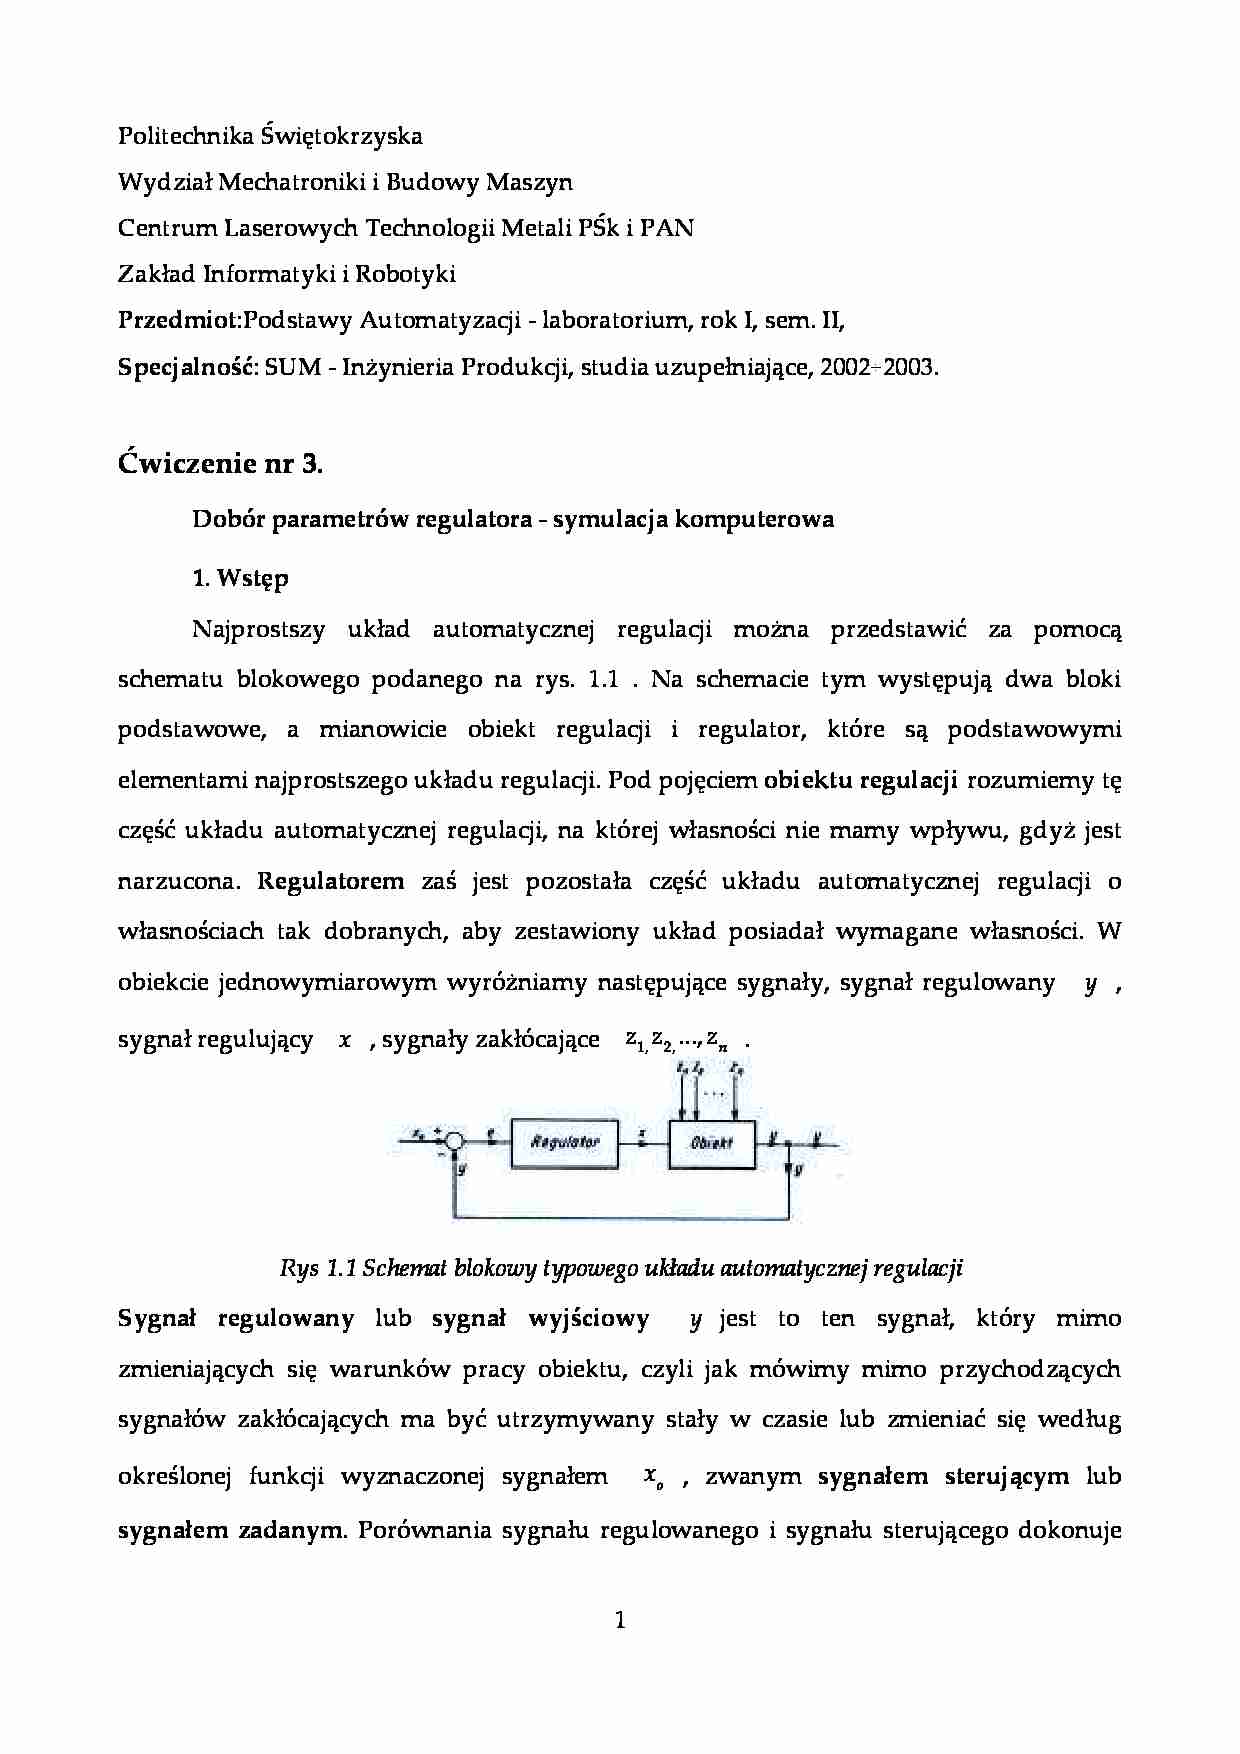 Dobór parametrów regulatora - symulacja komputerowa-sprawozdanie z laboratorium - strona 1